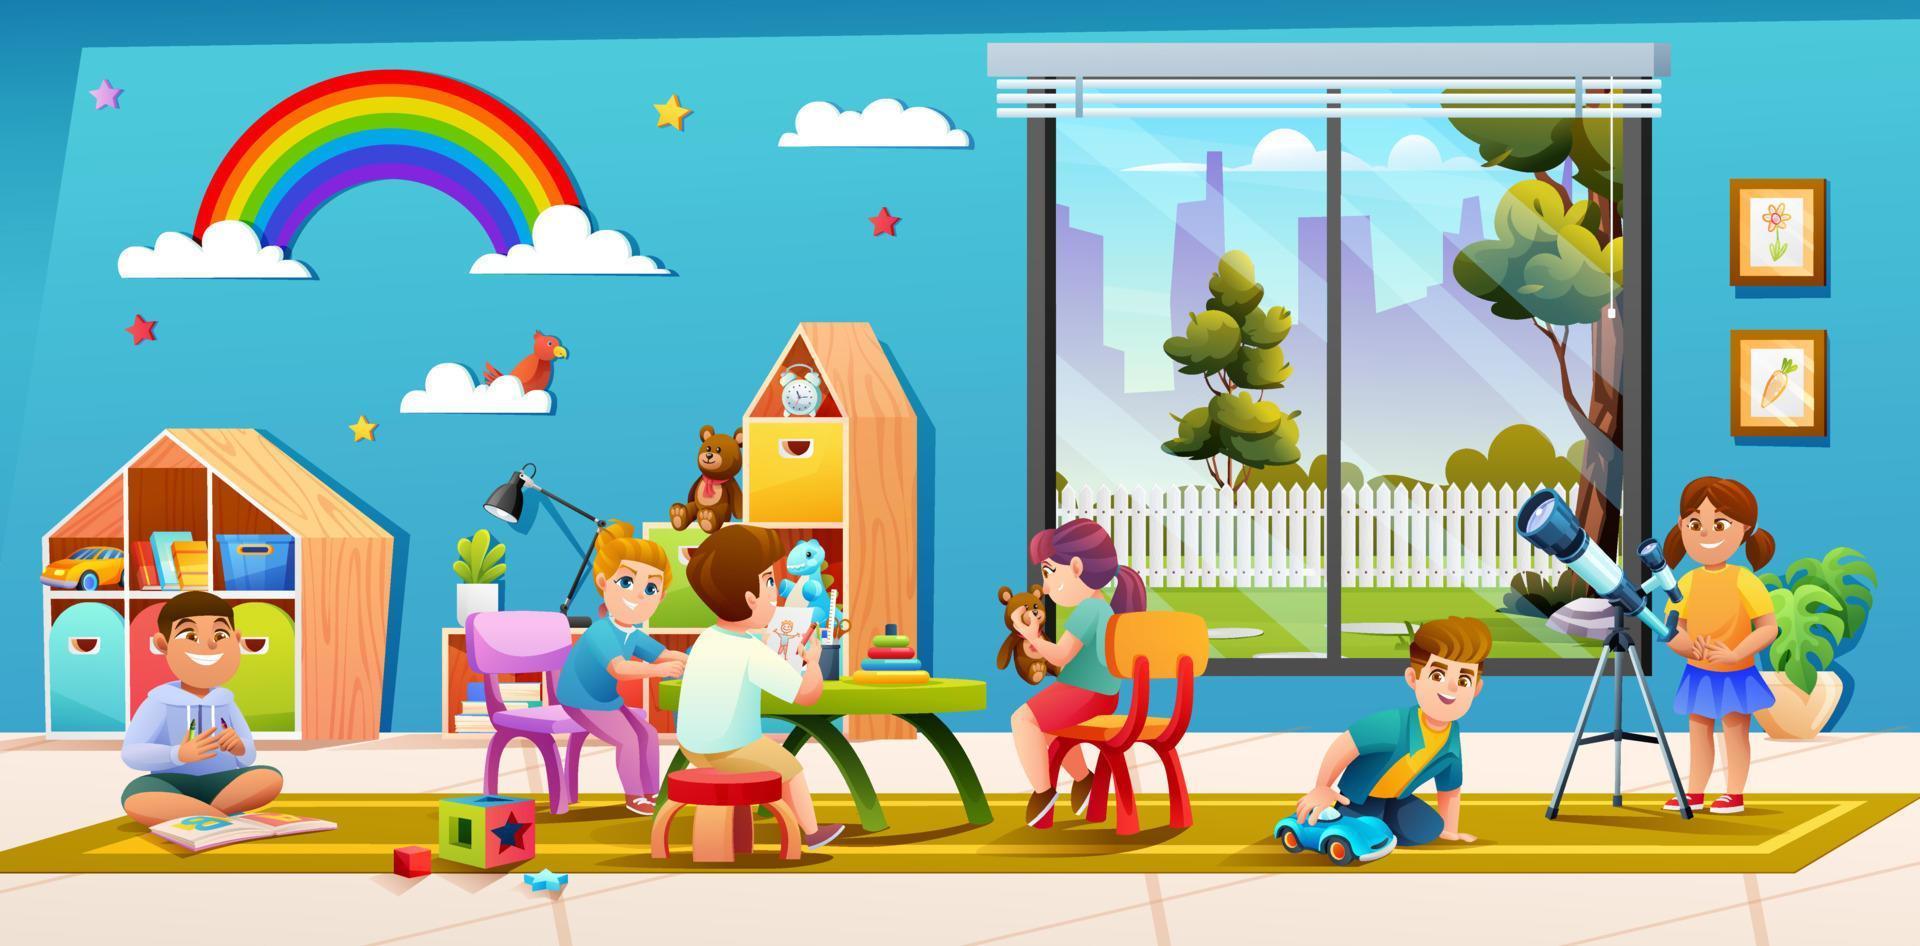 crianças alegres brincando juntas na ilustração dos desenhos animados da sala de aula do jardim de infância vetor